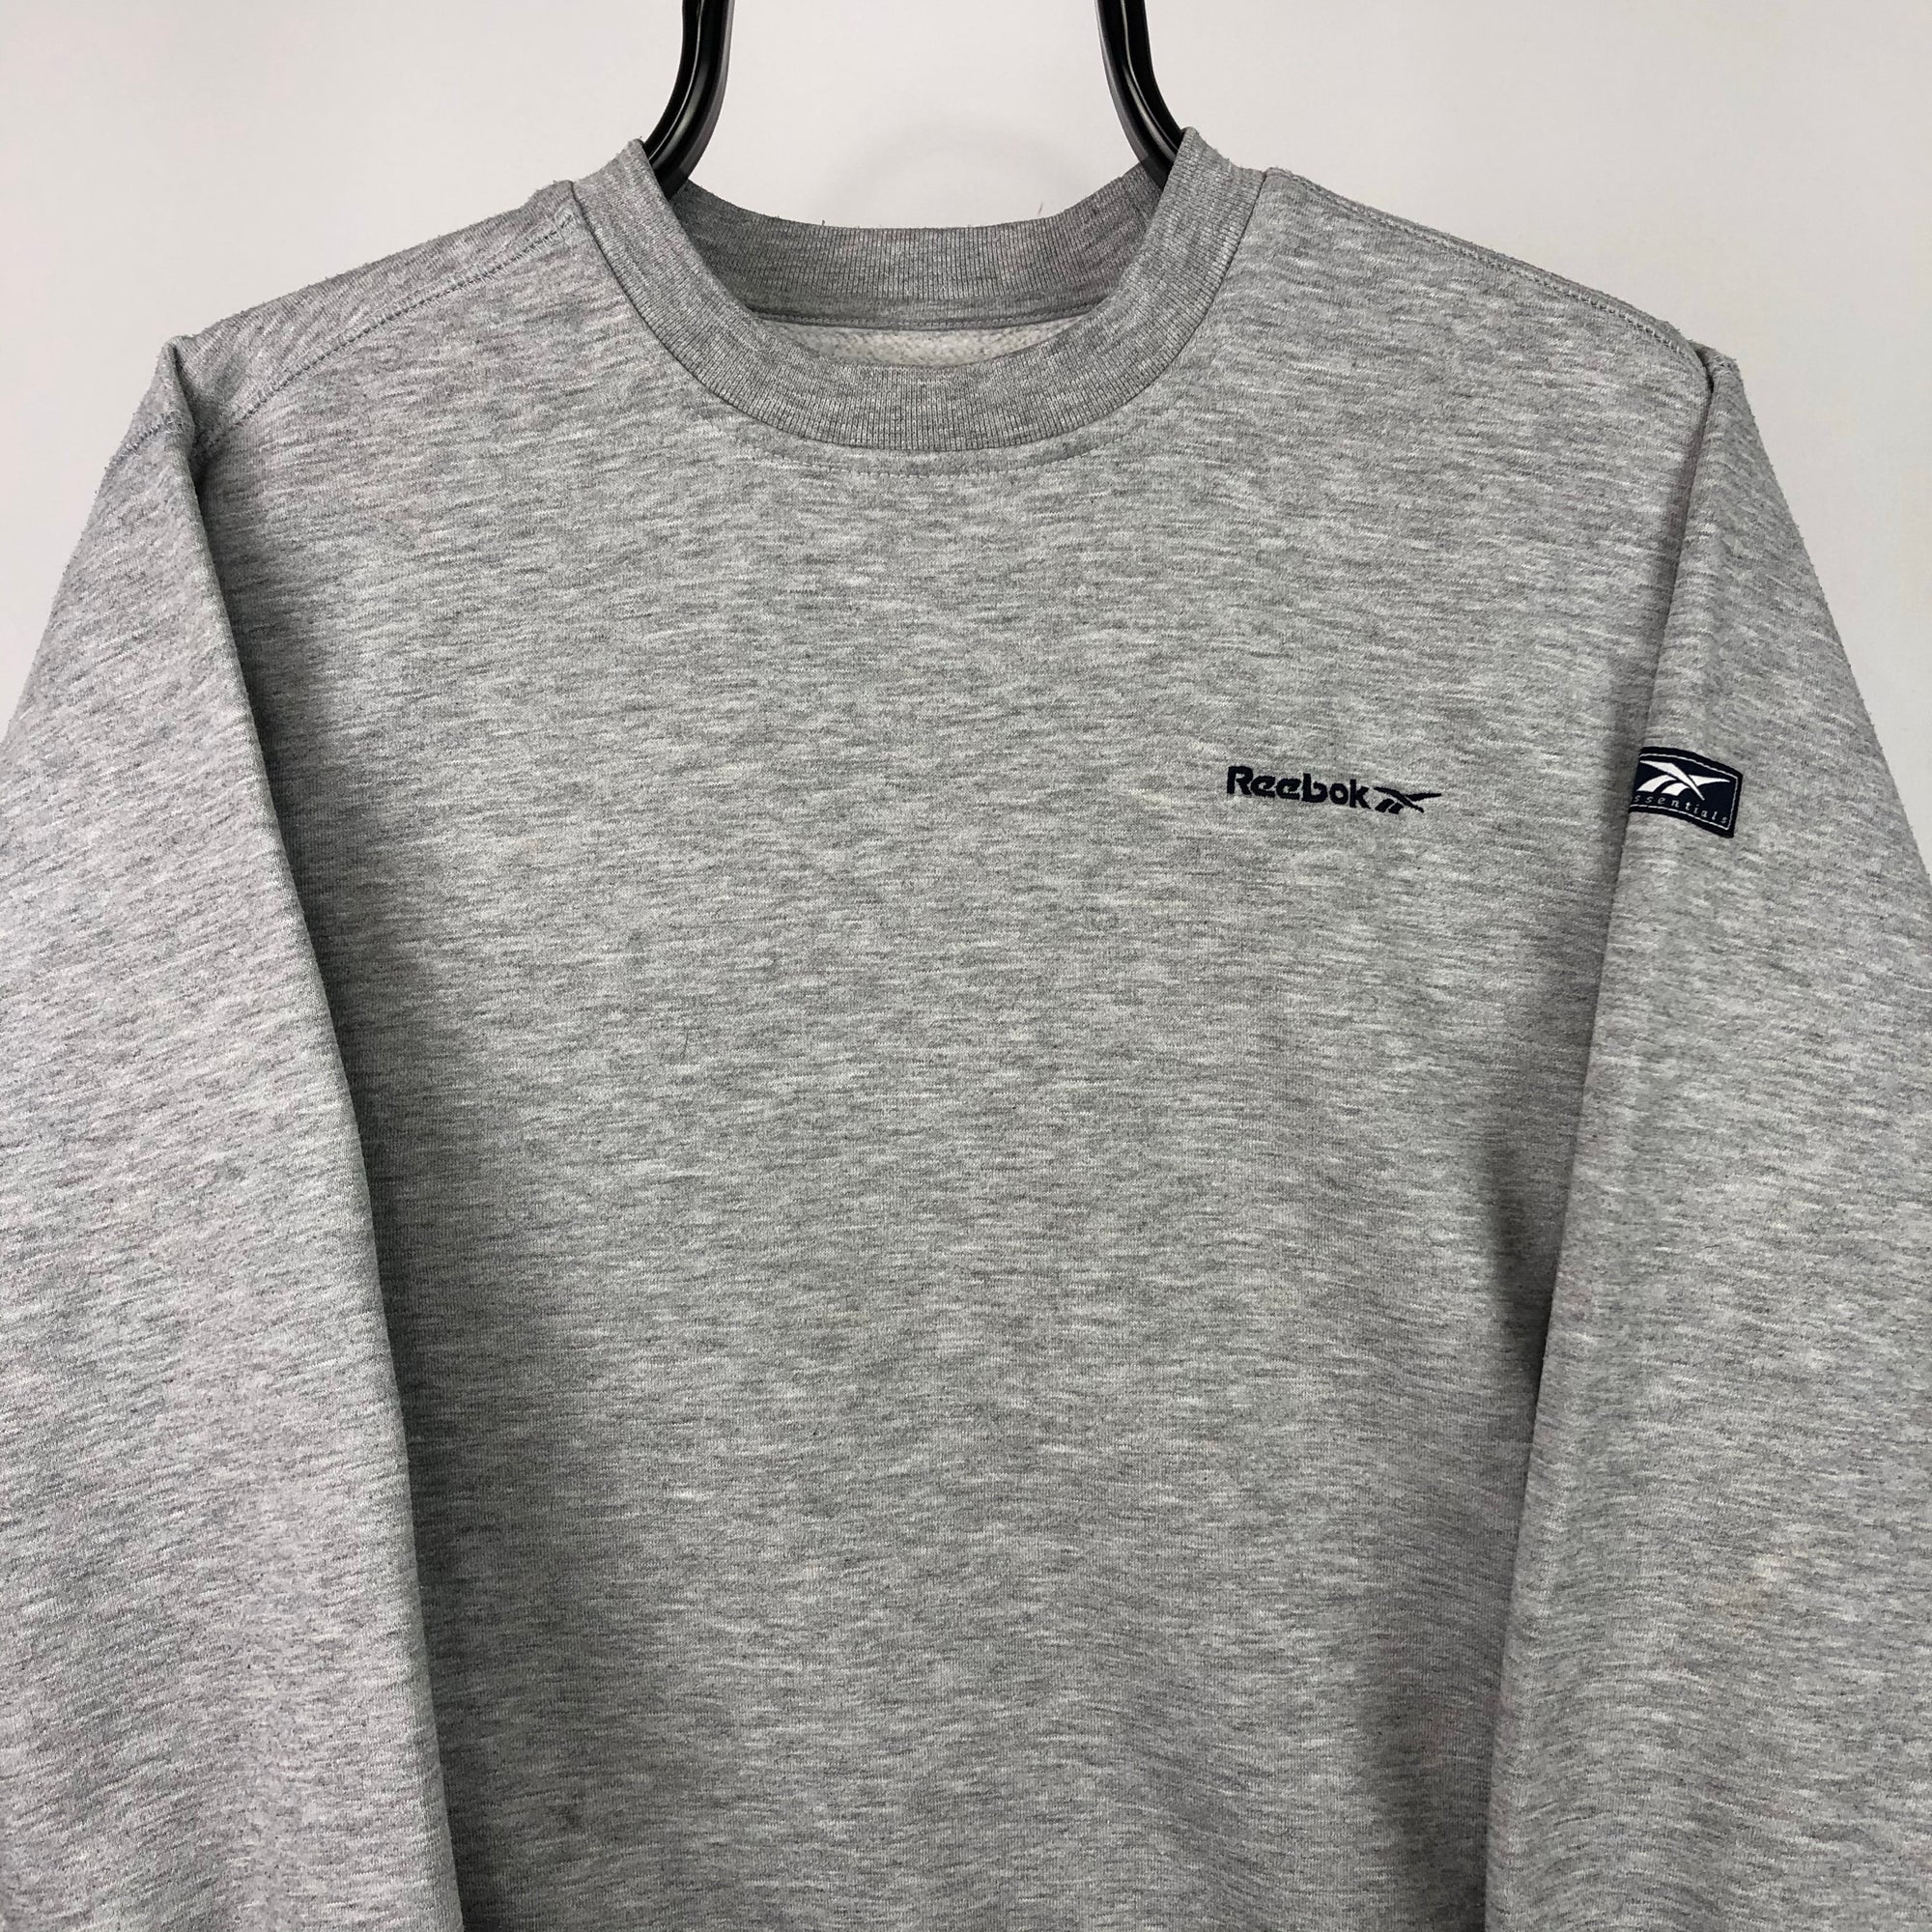 Vintage 90s Reebok Small Spellout Sweatshirt in Grey - Men’s XS/Women’s Small